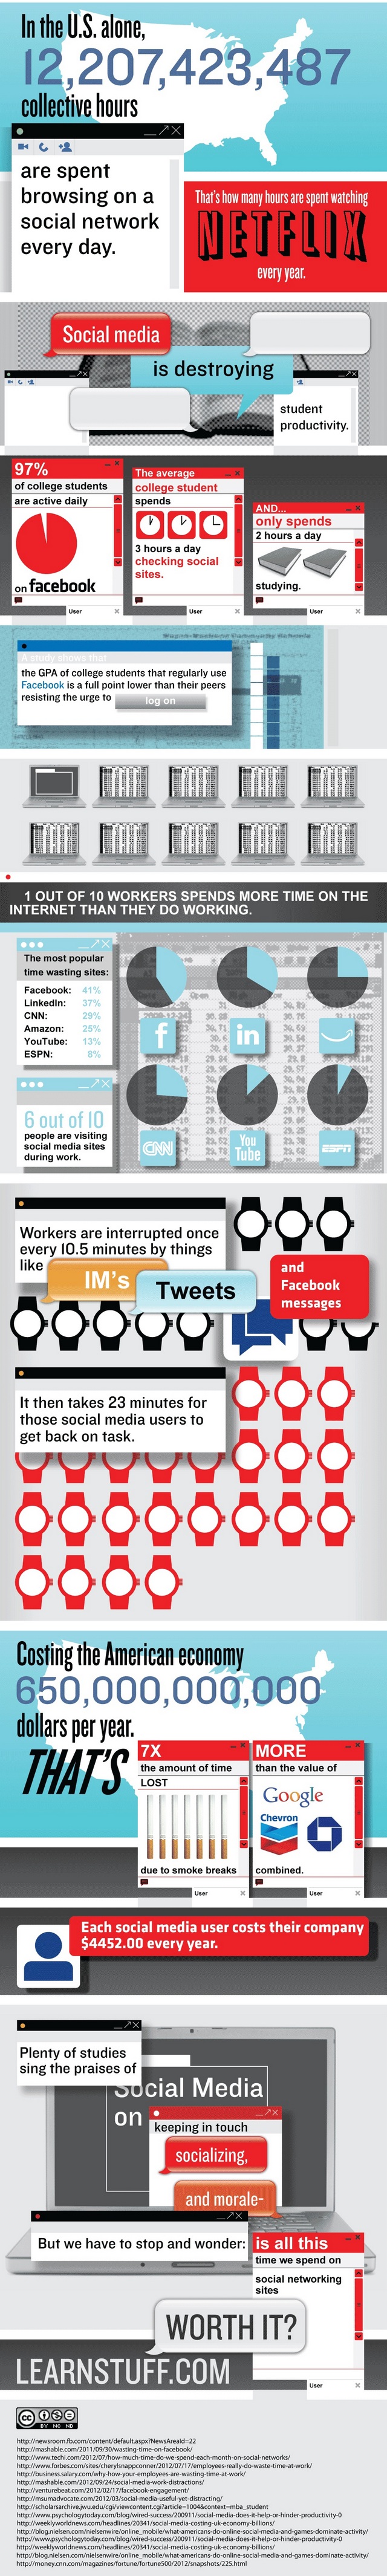 Відволікання працівників на соціальні мережі коштує економіці США $650 млрд (інфографіка)